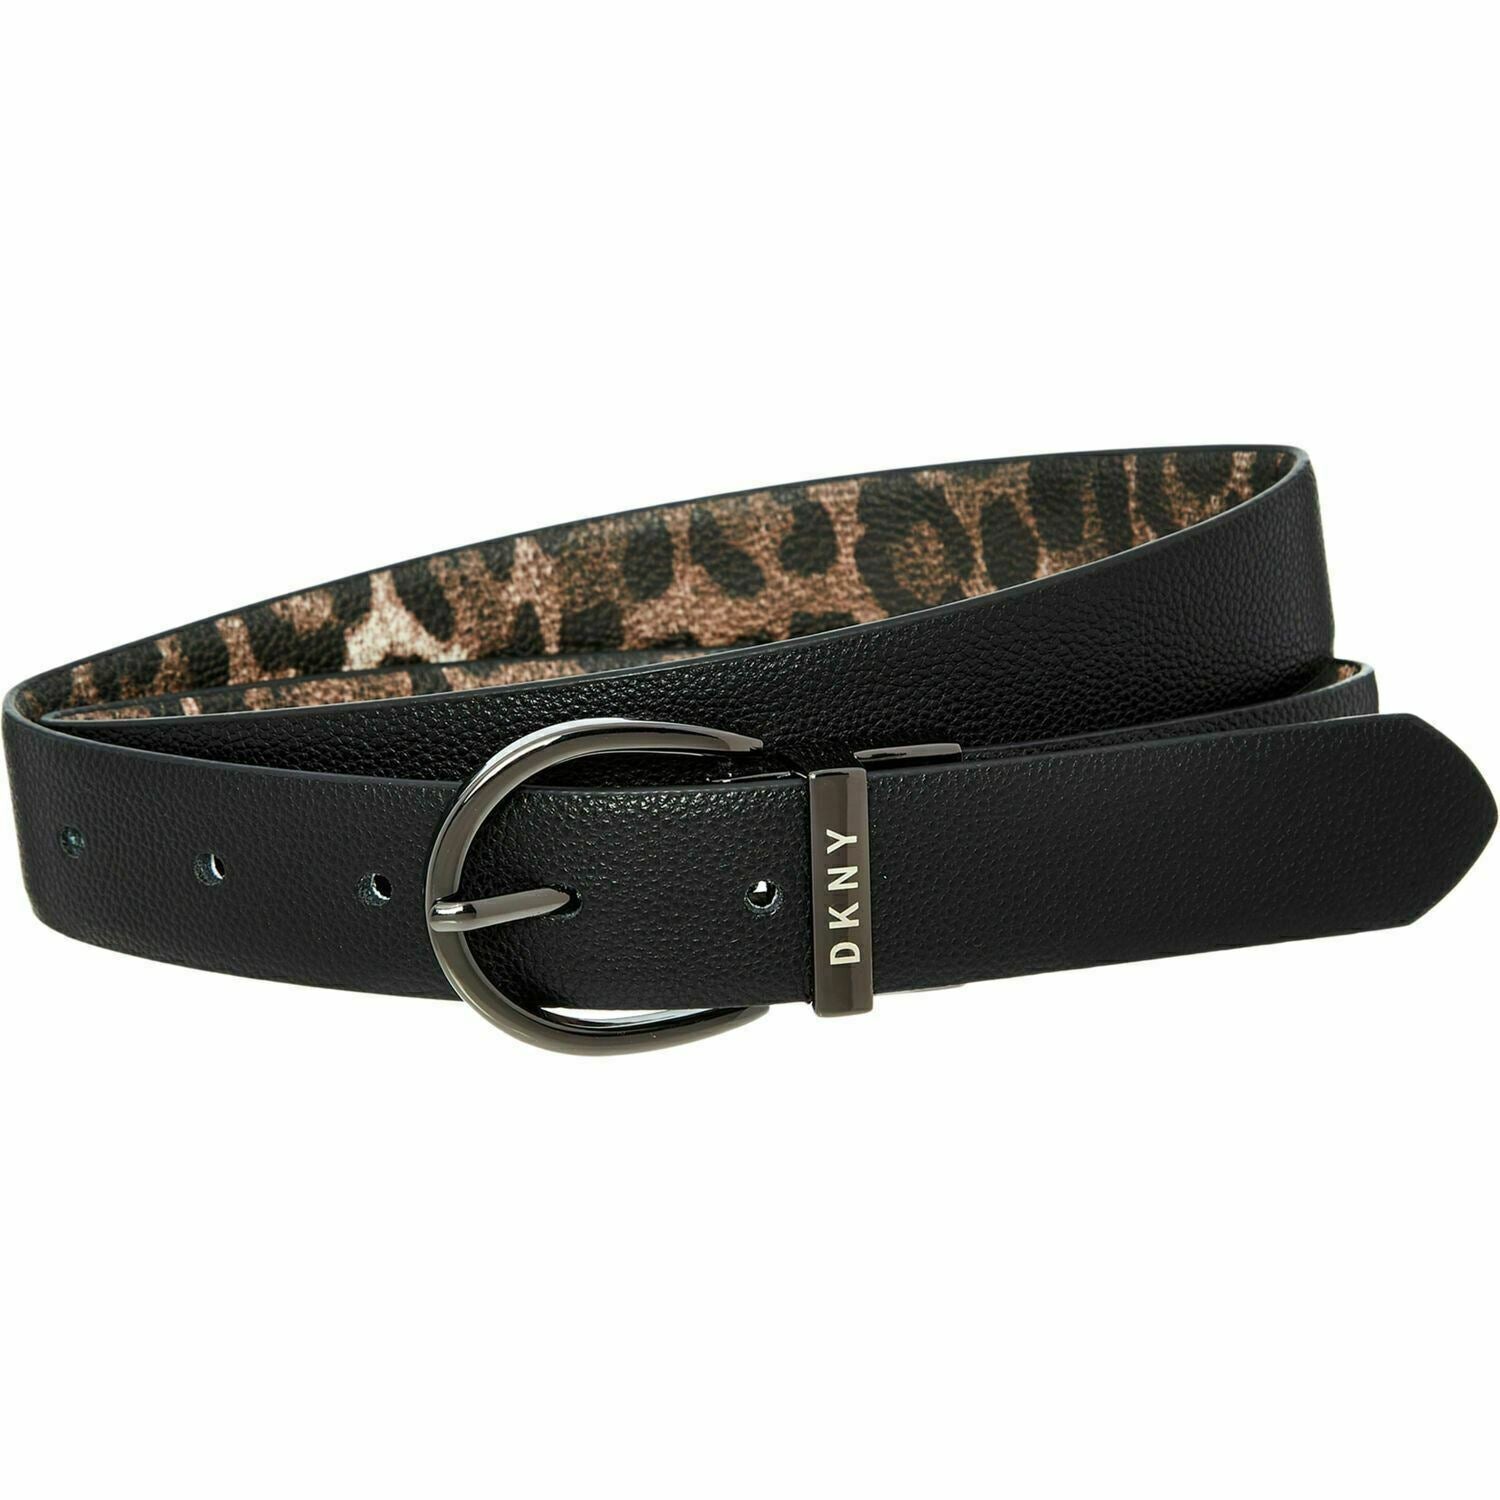 DKNY Women's Faux Leather Reversible Belt, Black /Leopard Print, 1" wide, size L